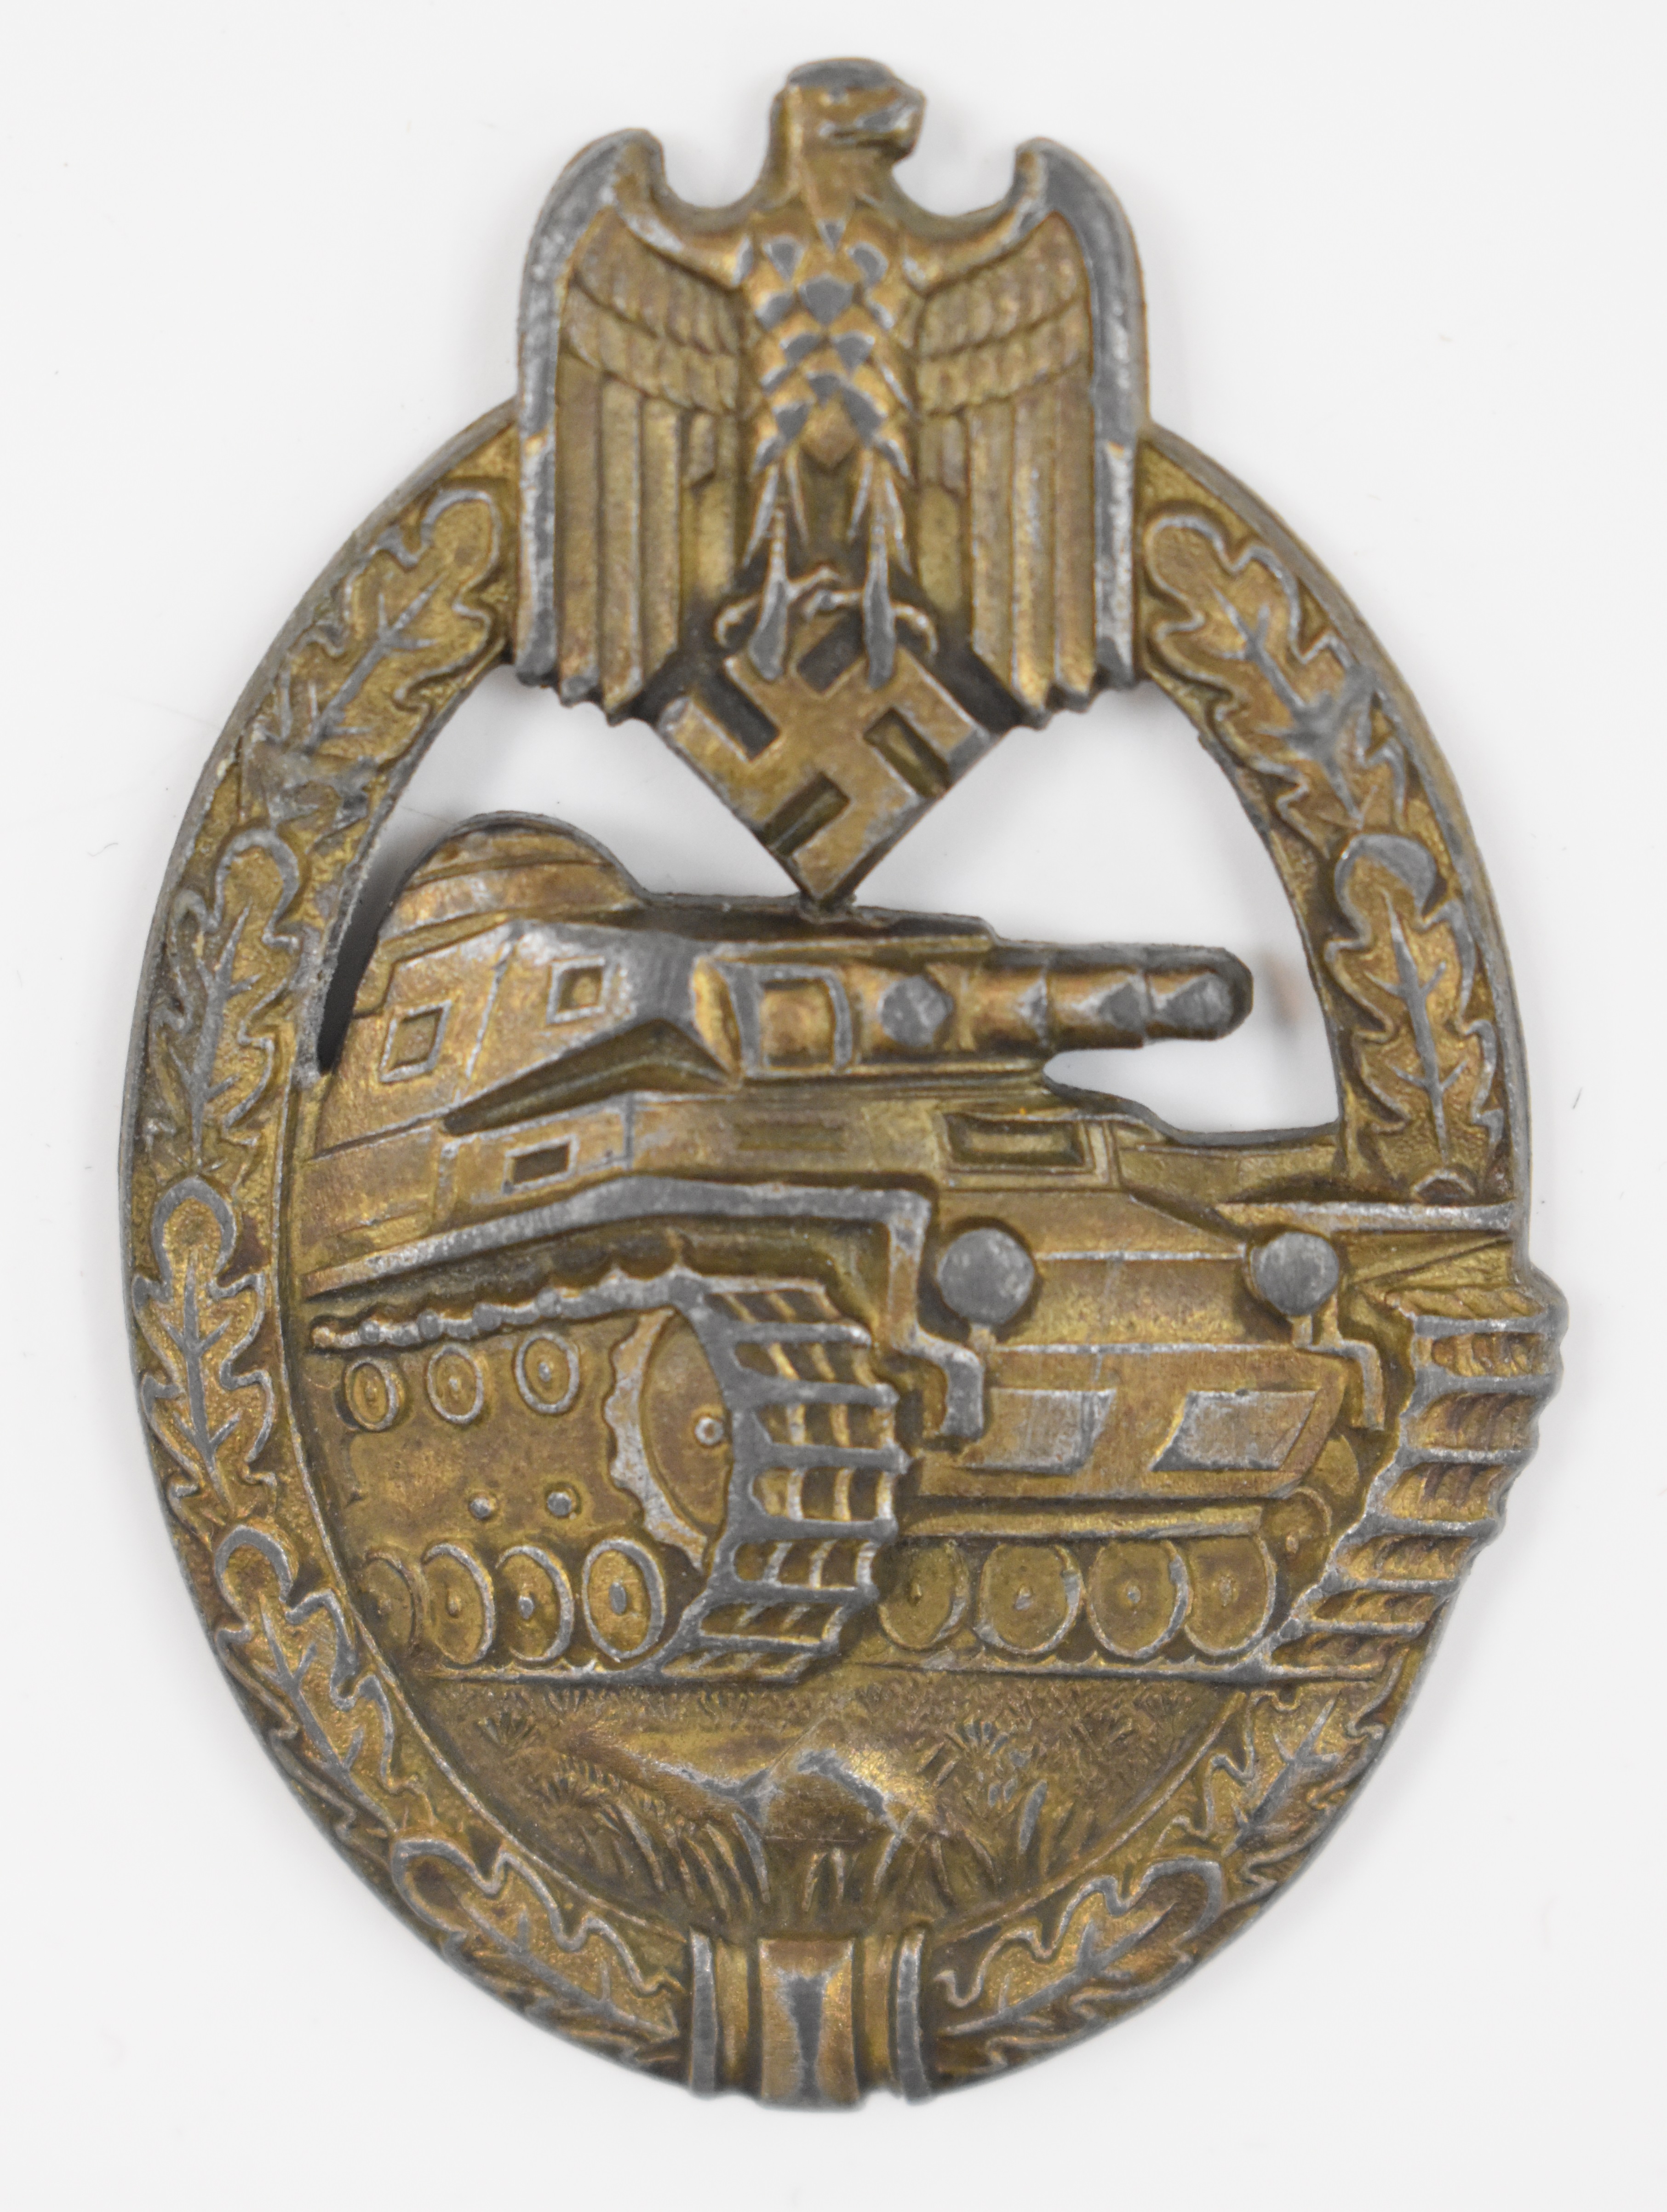 German WW2 Nazi Third Reich tank badge